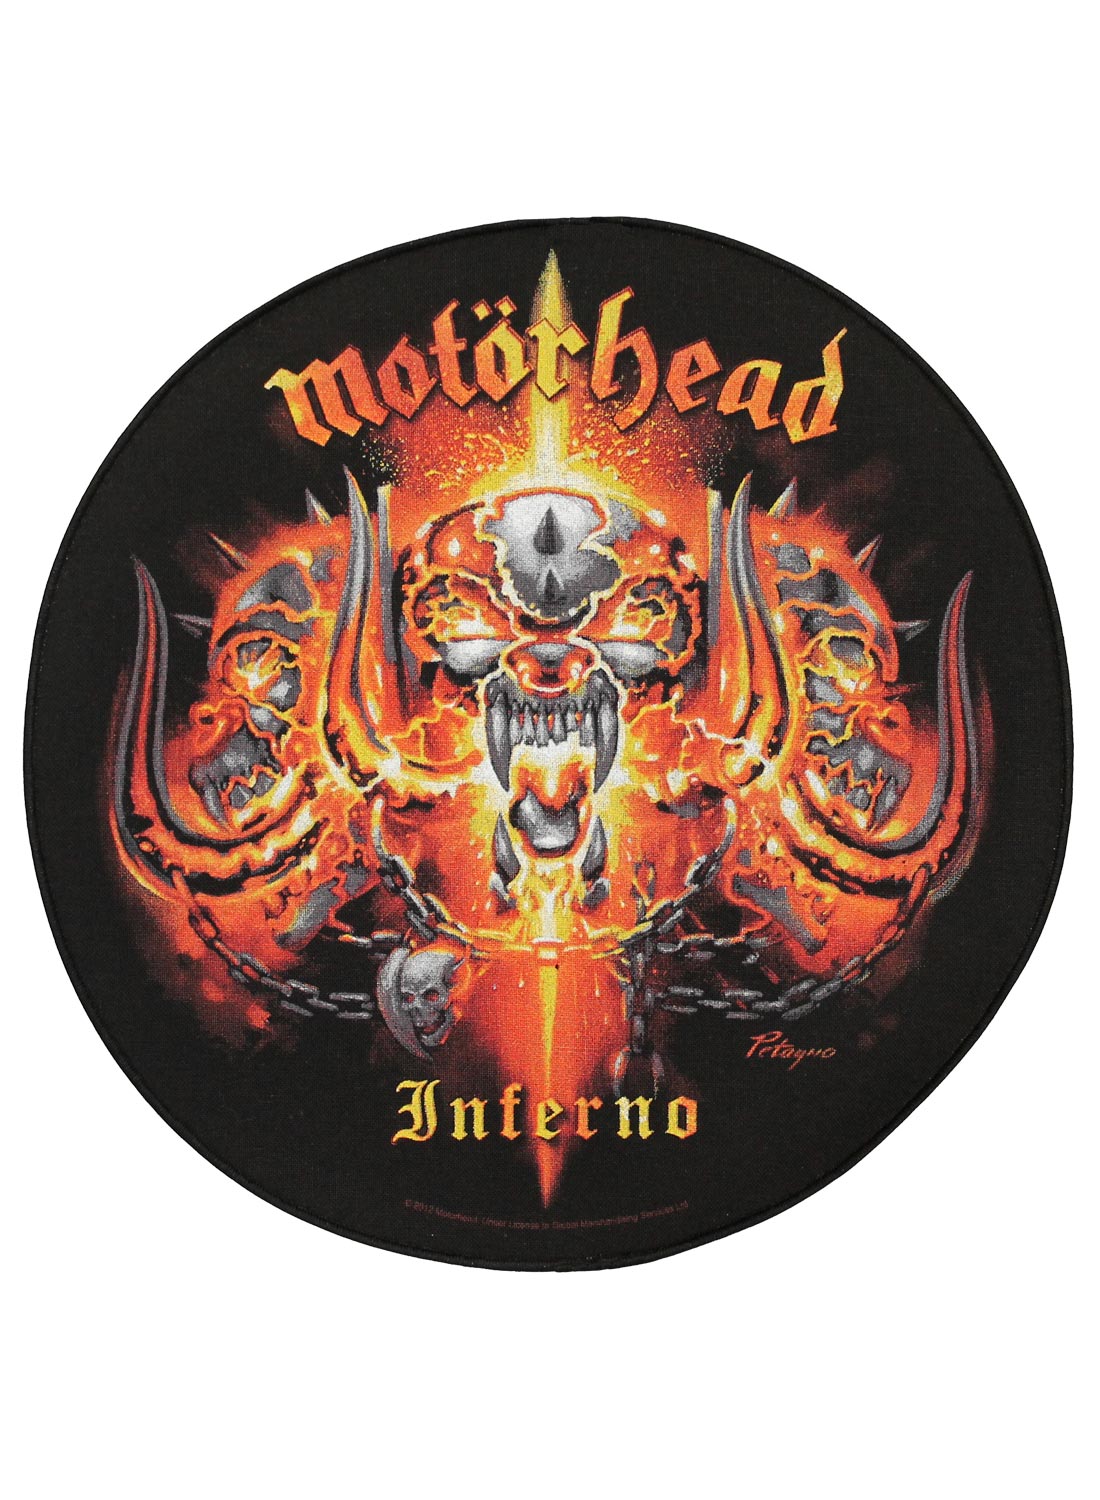 Motörhead inferno Back Patch